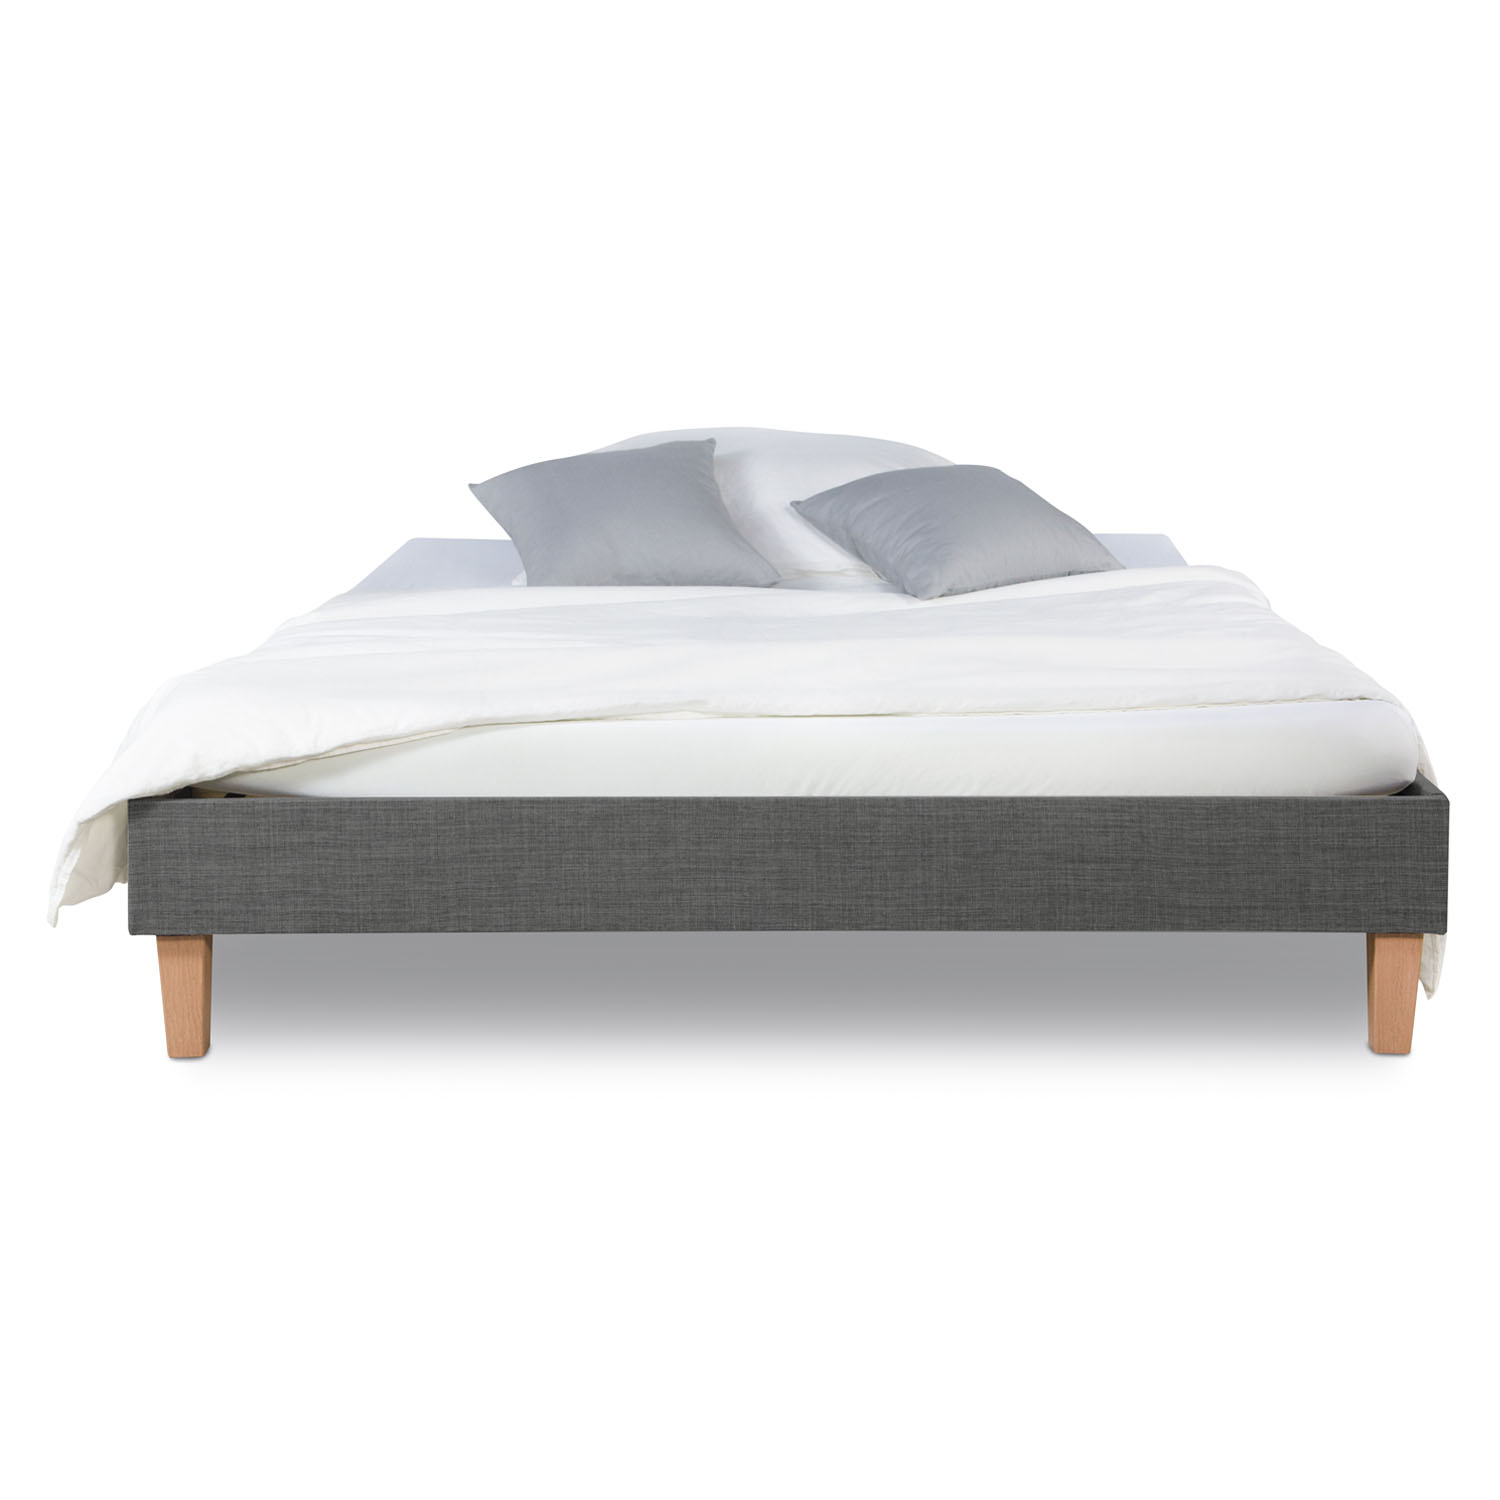 Upholstered Bed 90 120 140 160 180 x 200 cm Grey Futon Bed Frame Slatted Frame